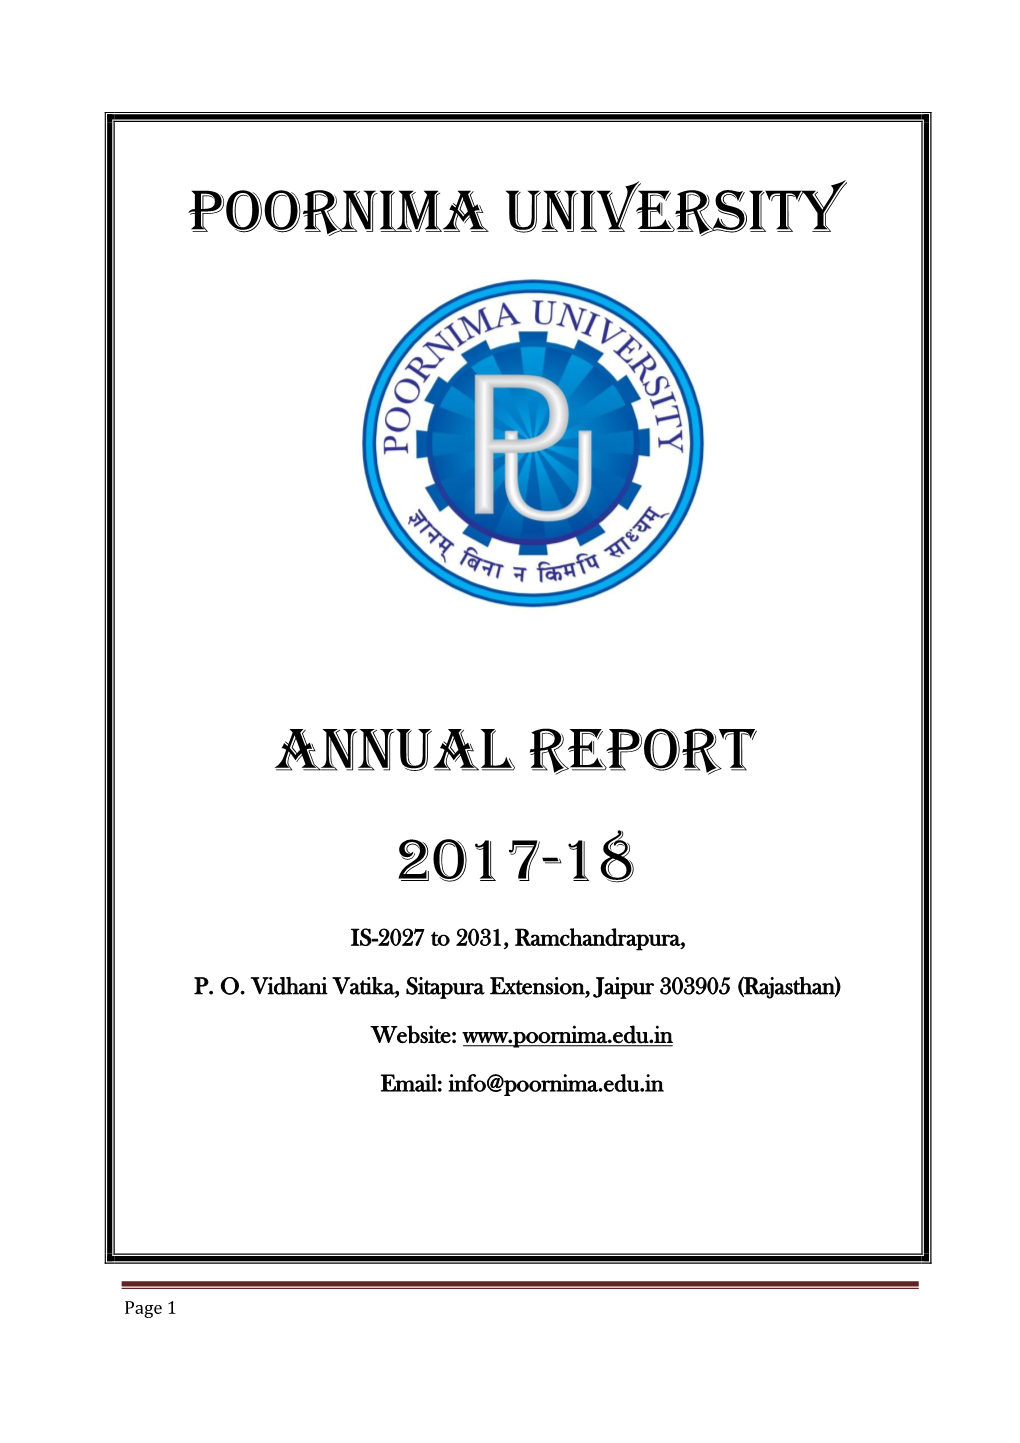 Poornima University Annual Report 2017-18